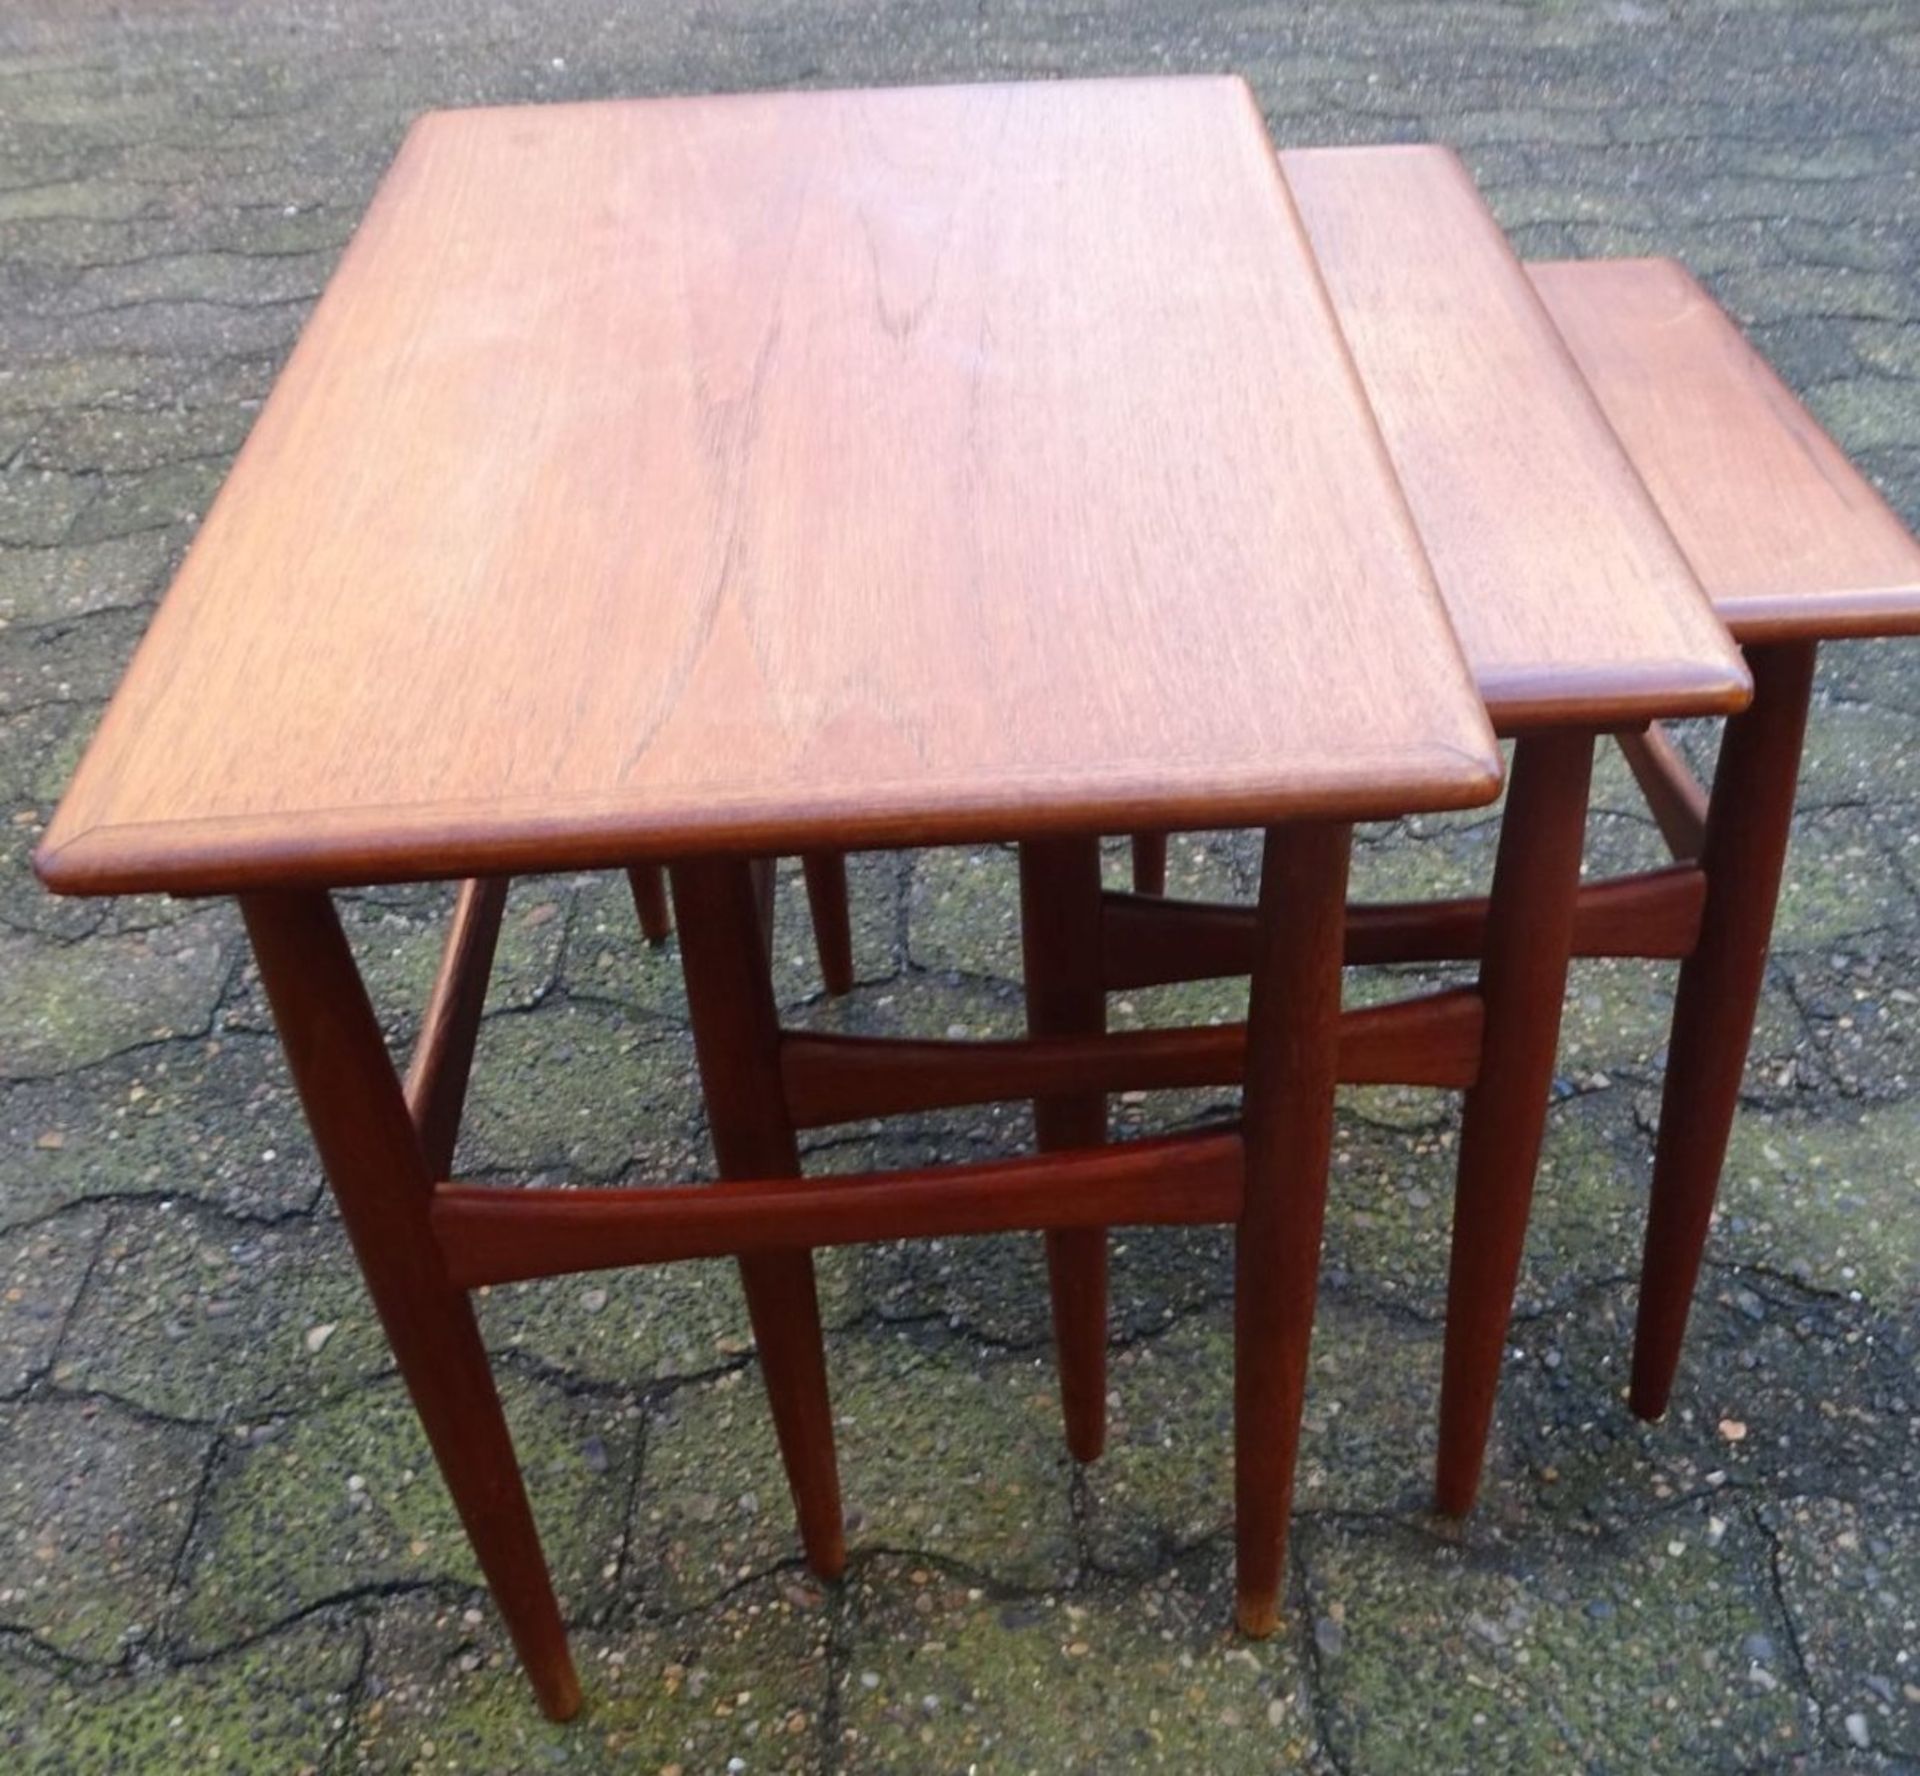 3-Satz Tischchen, Teak, Dänisches Design, 60-er Jahre, H-48 cm, max. 58x38 cm - Bild 4 aus 7